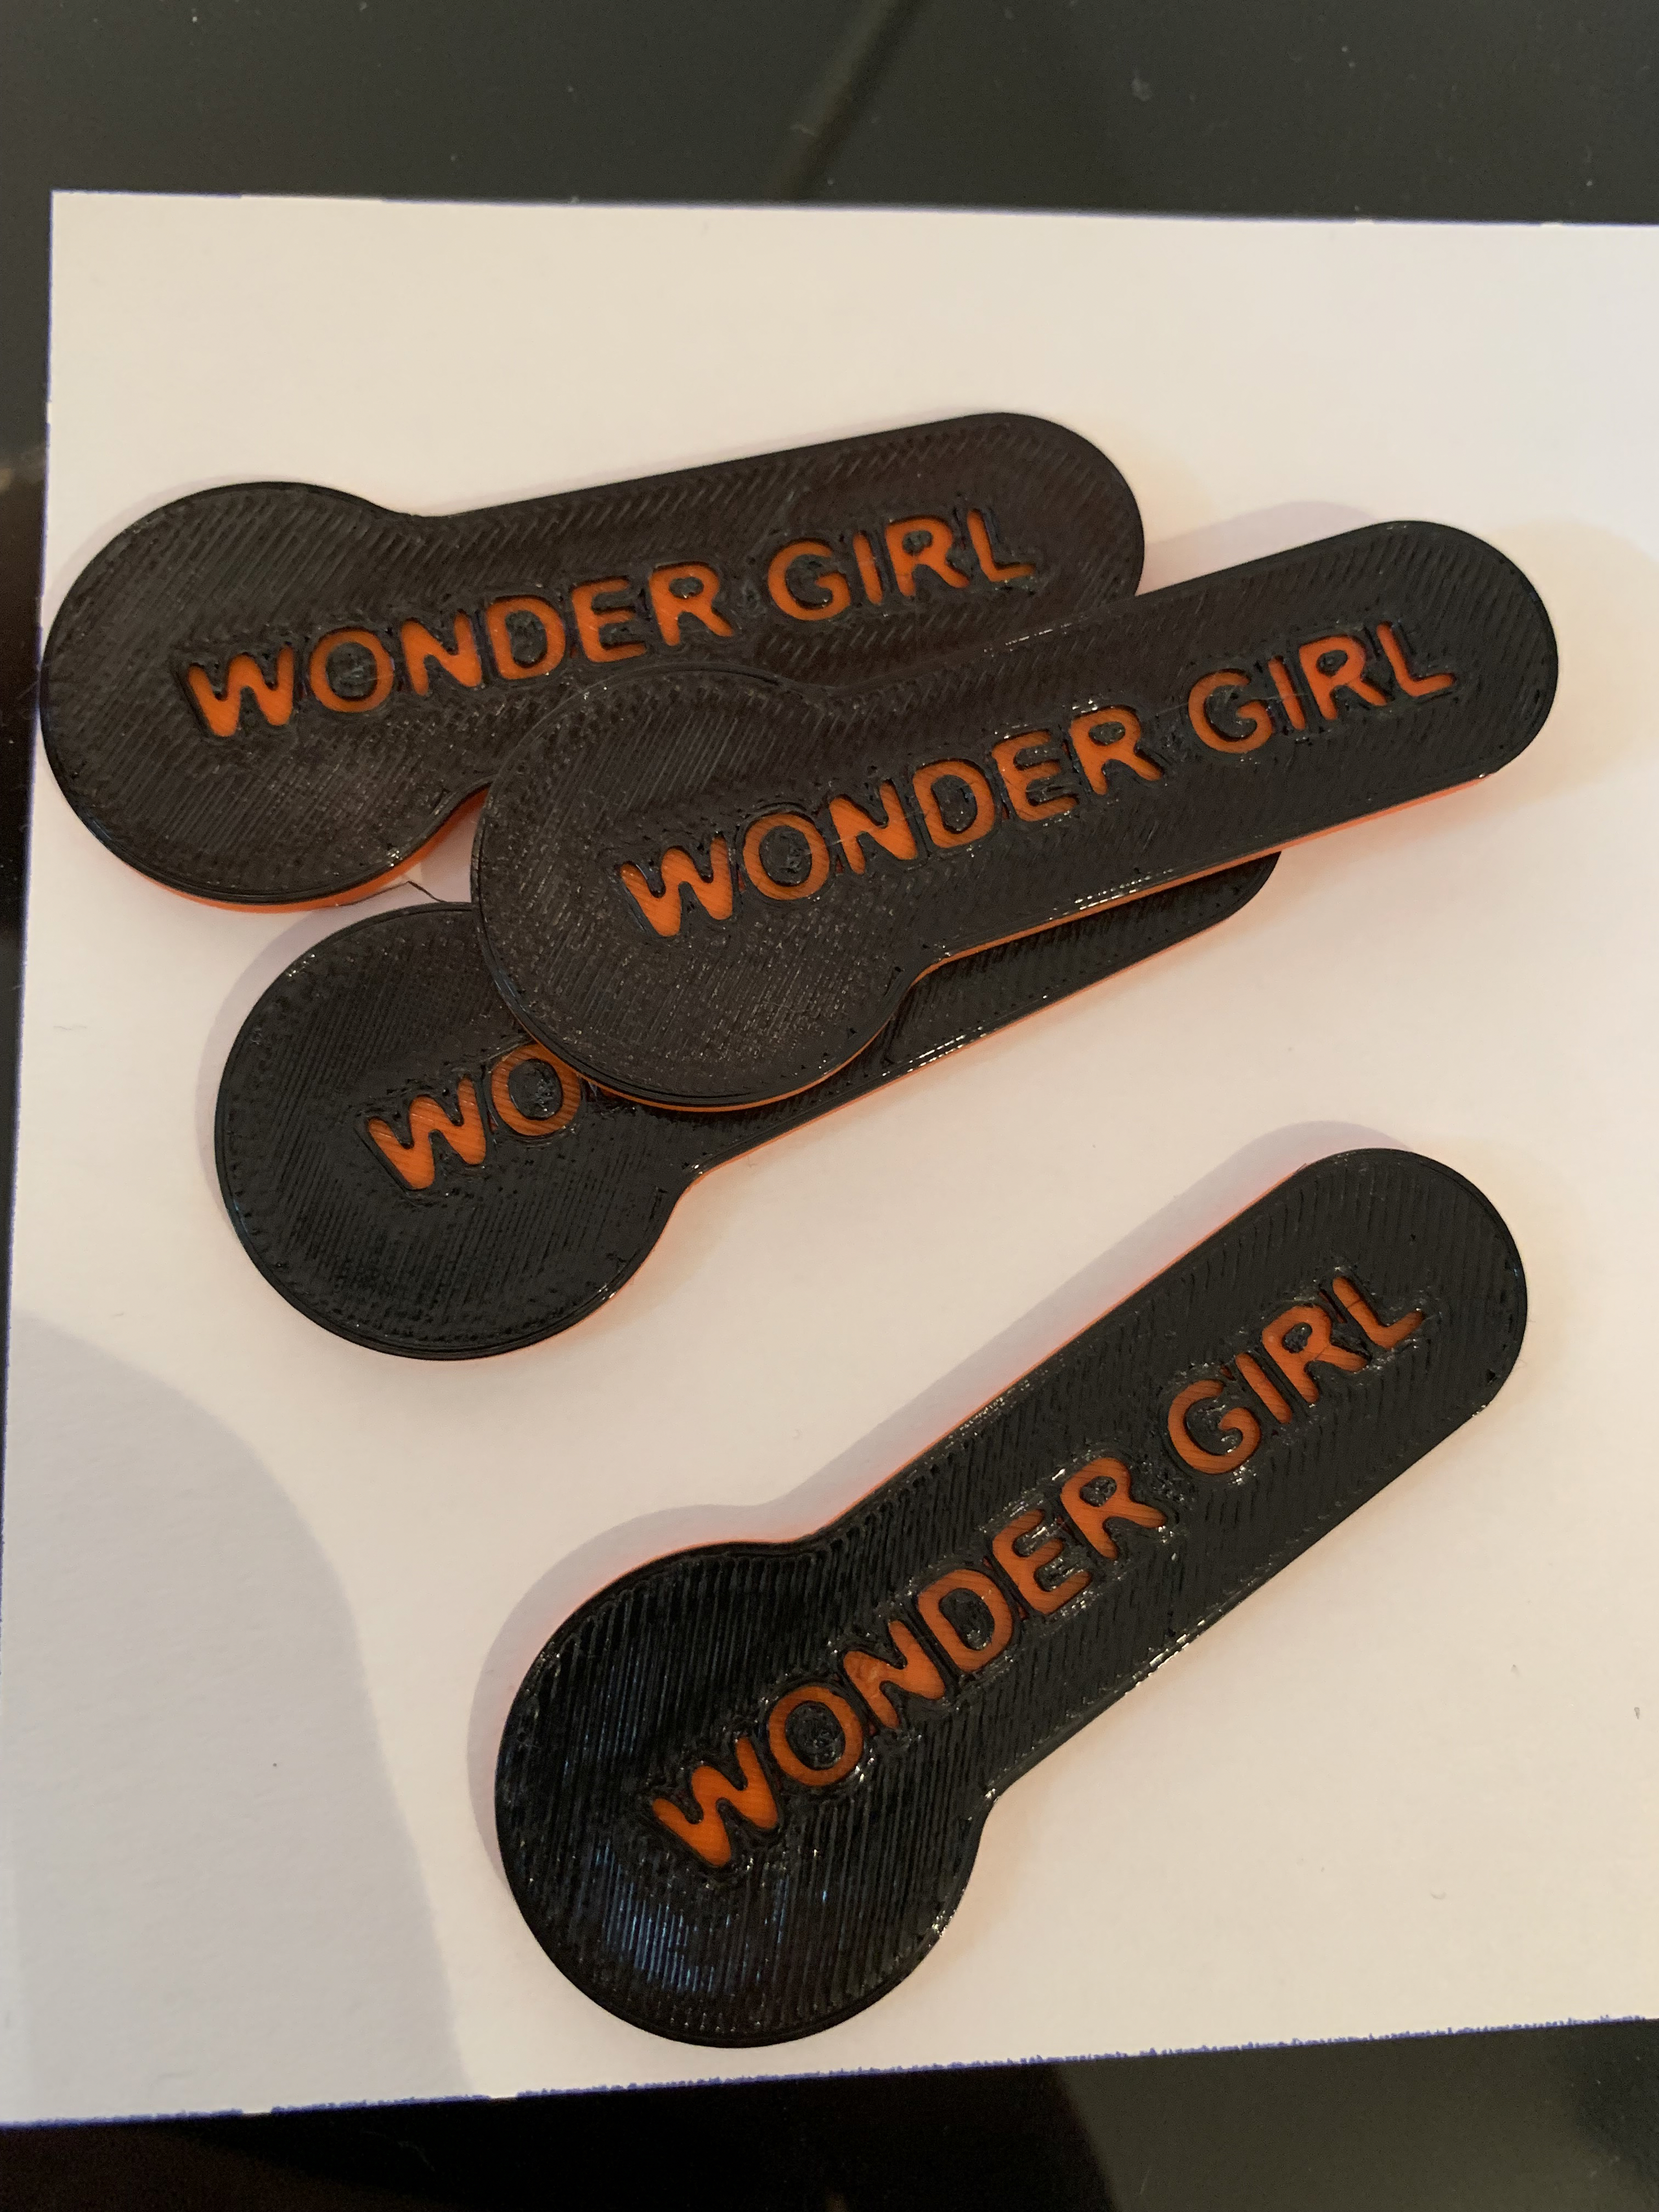 Token trolley - Wonder Girl Wonder Boy